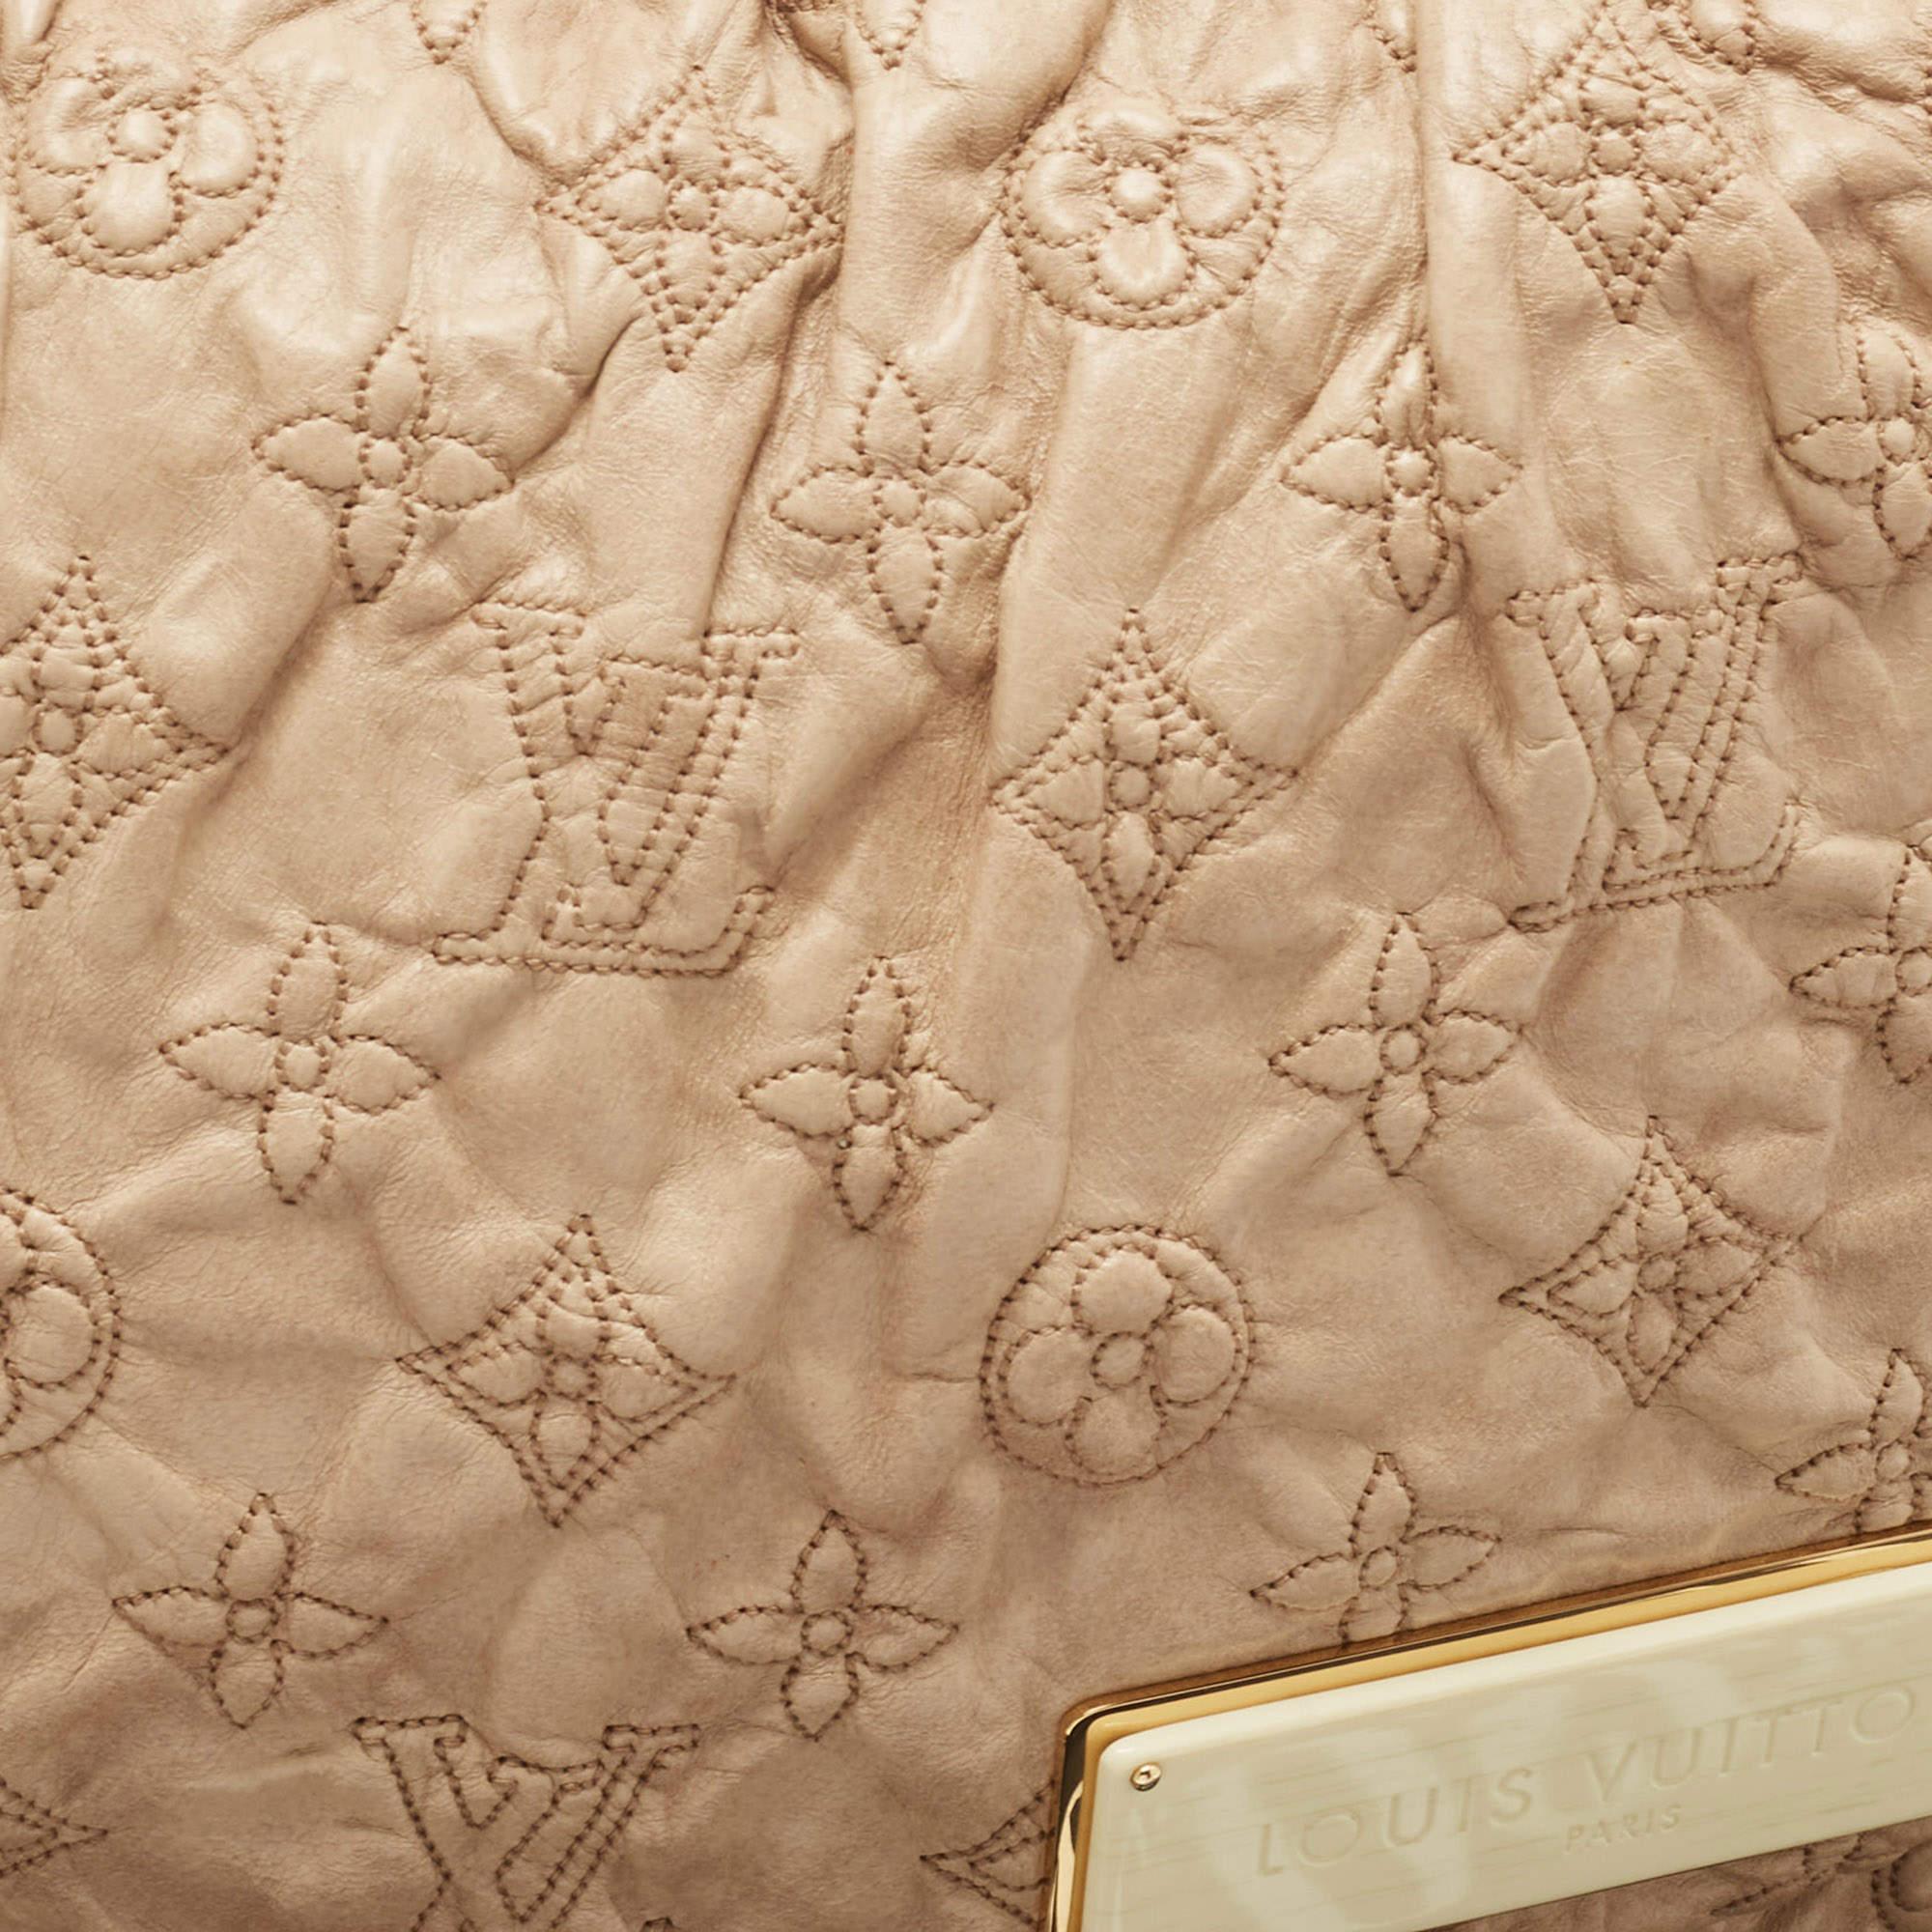 D'une élégance et d'une beauté exceptionnelles, ce sac Louis Vuitton rehaussera instantanément votre tenue. Confectionné à partir des meilleurs matériaux, cet authentique LV Limited Edition Olympe Nimbus GM est une ode parfaite au savoir-faire